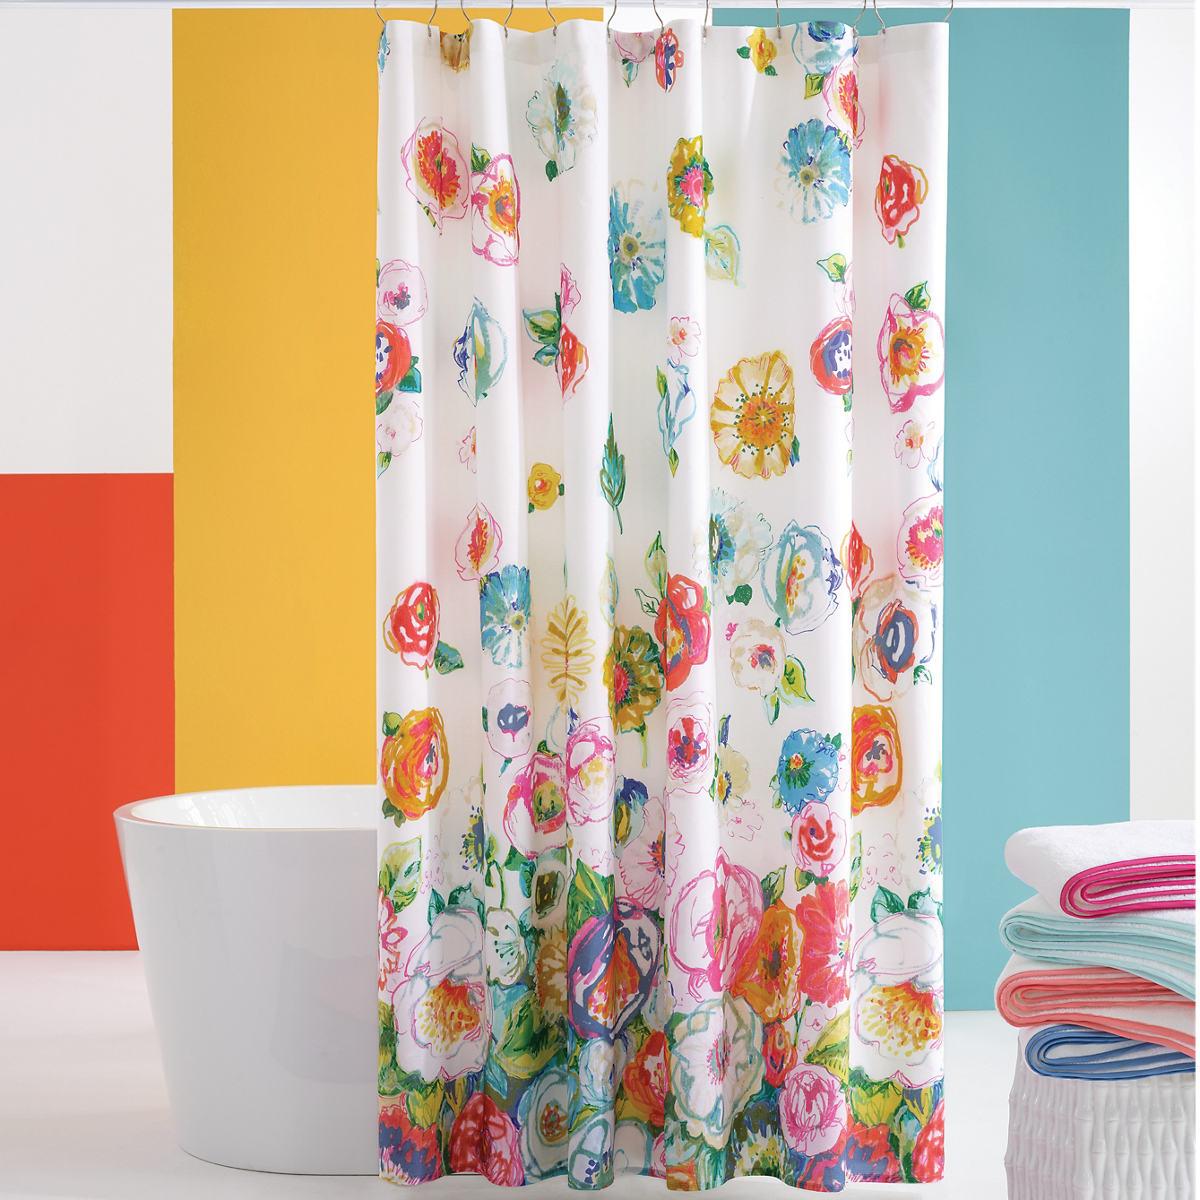 Flower Shower Curtain The, Shower Curtain Flowers